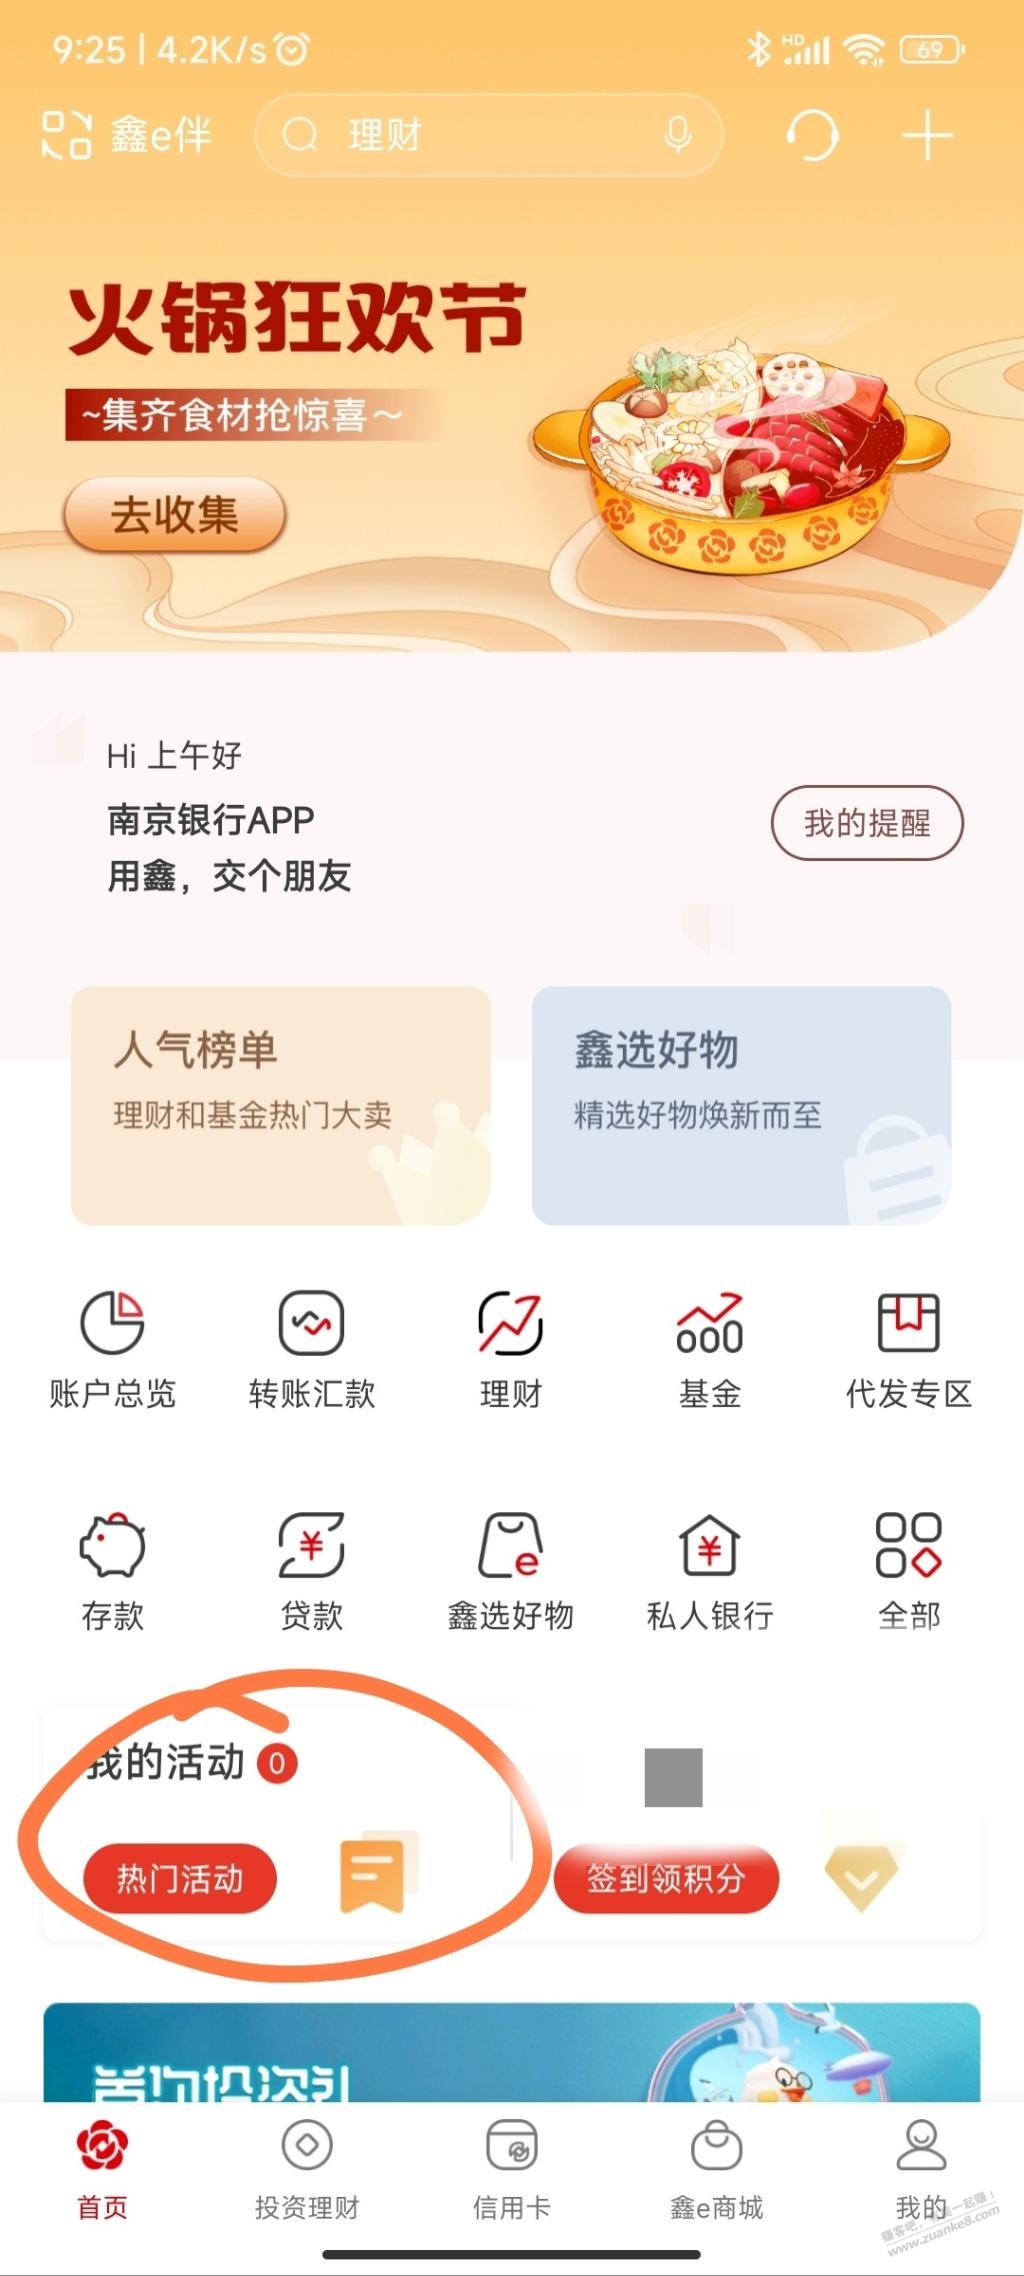 南京银行app，江苏地区，小毛，速度。 - 0818团